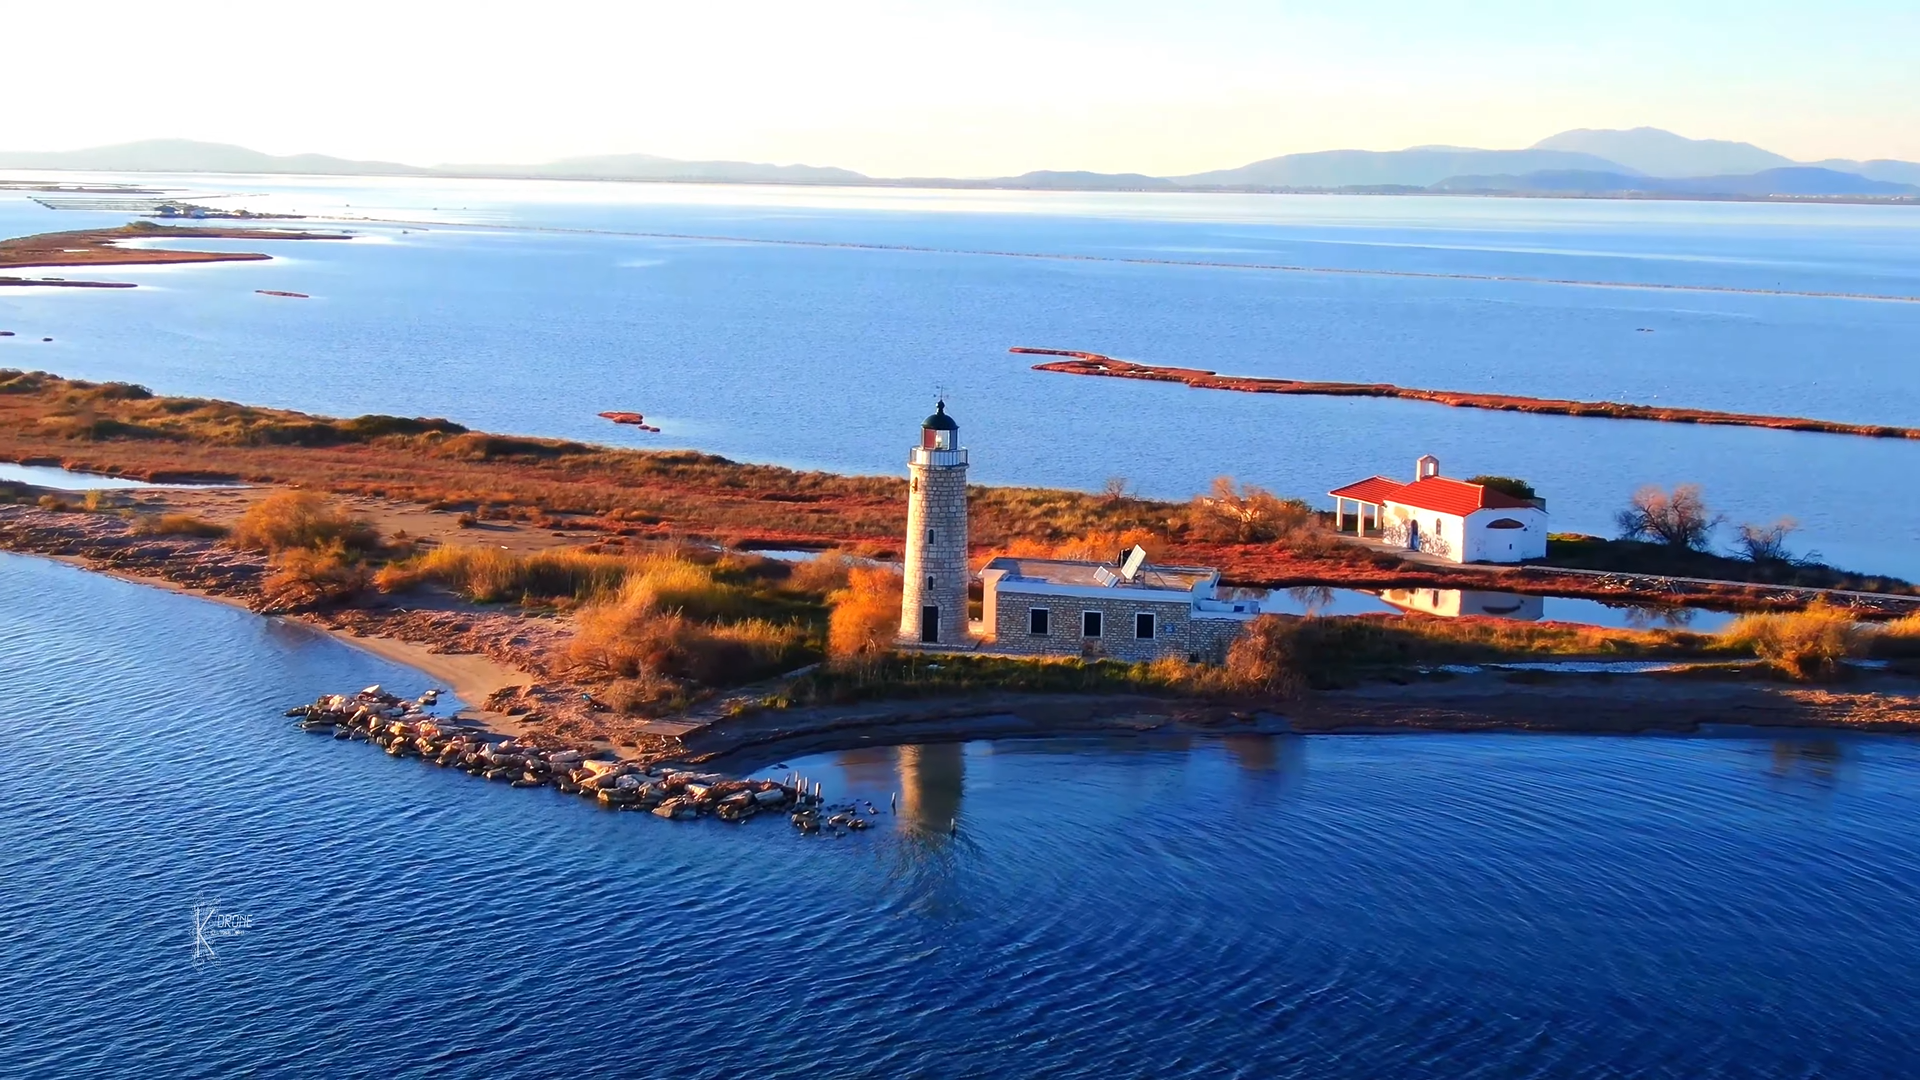 Η ιστορική νησίδα του Μεσολογγίου που υπήρξε ορμητήριο του ναυτικού. Εκεί αποβιβάστηκε ο Λόρδος Βύρων. Δείτε από ψηλά (drone)